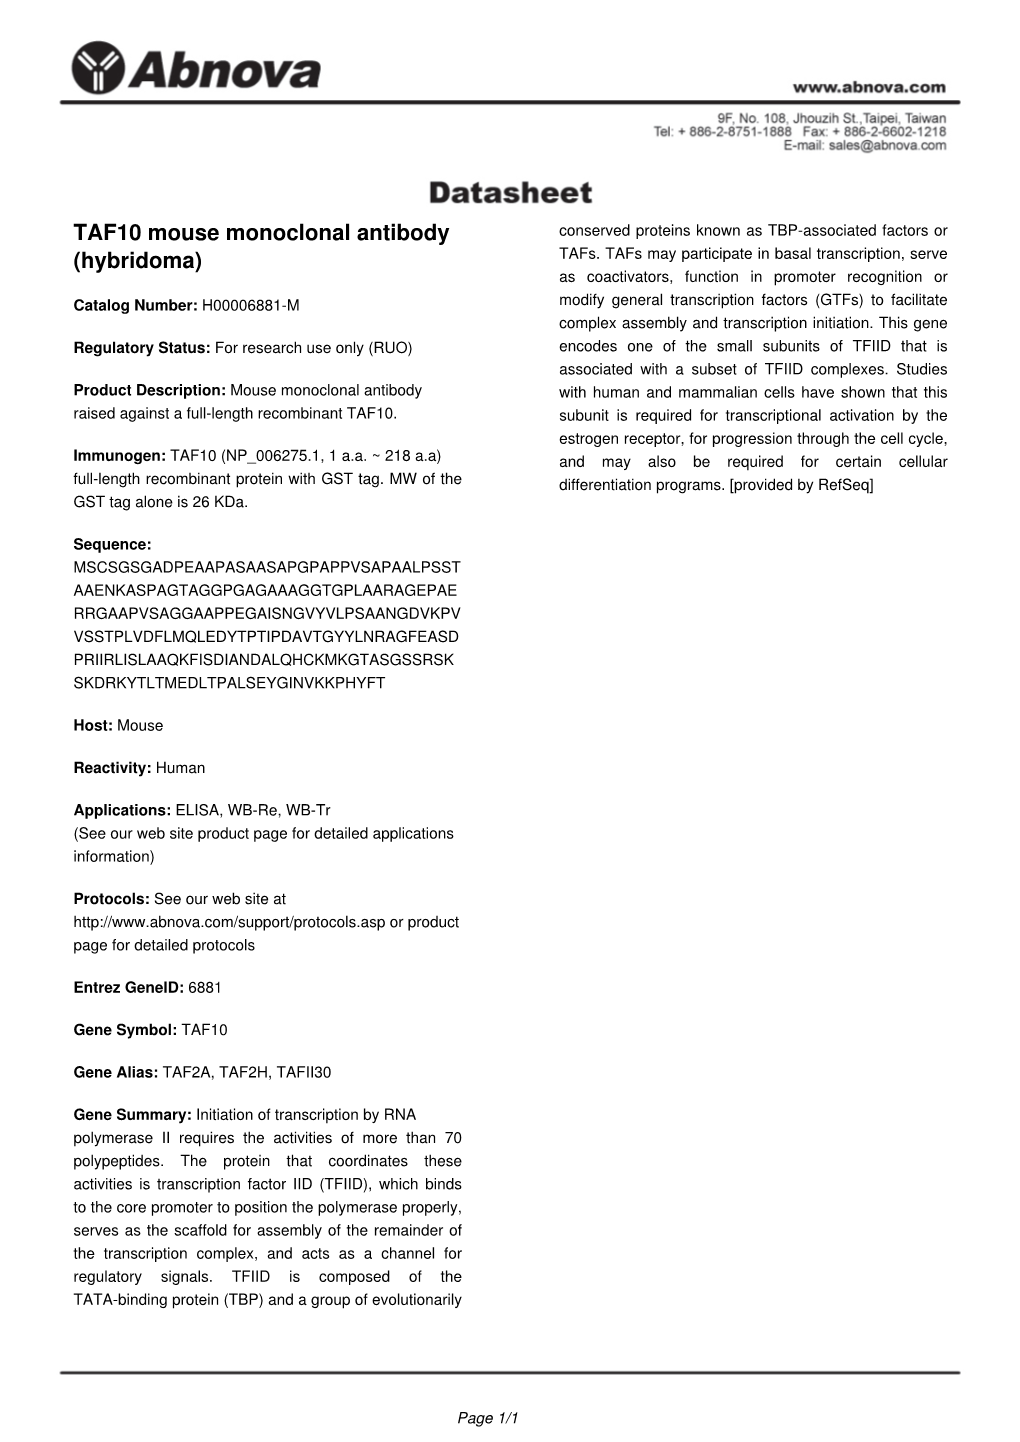 TAF10 Mouse Monoclonal Antibody (Hybridoma)